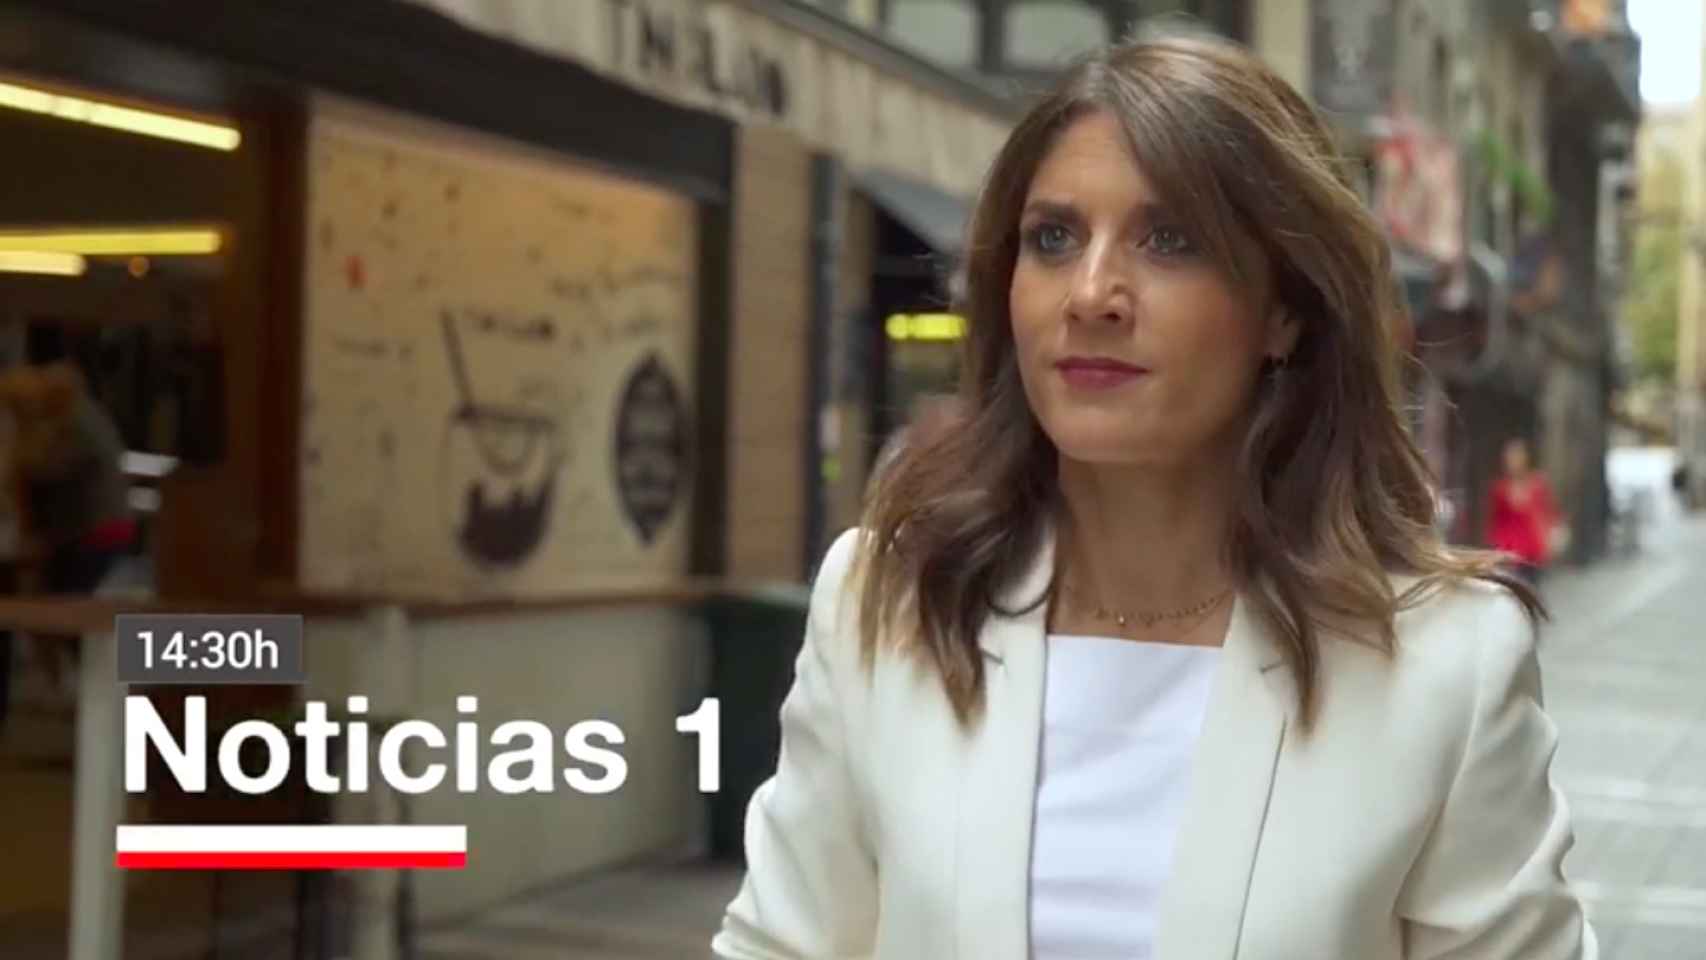 Captura del vídeo de promoción del nuevo informativo de la tele navarra con Blanca Basiano